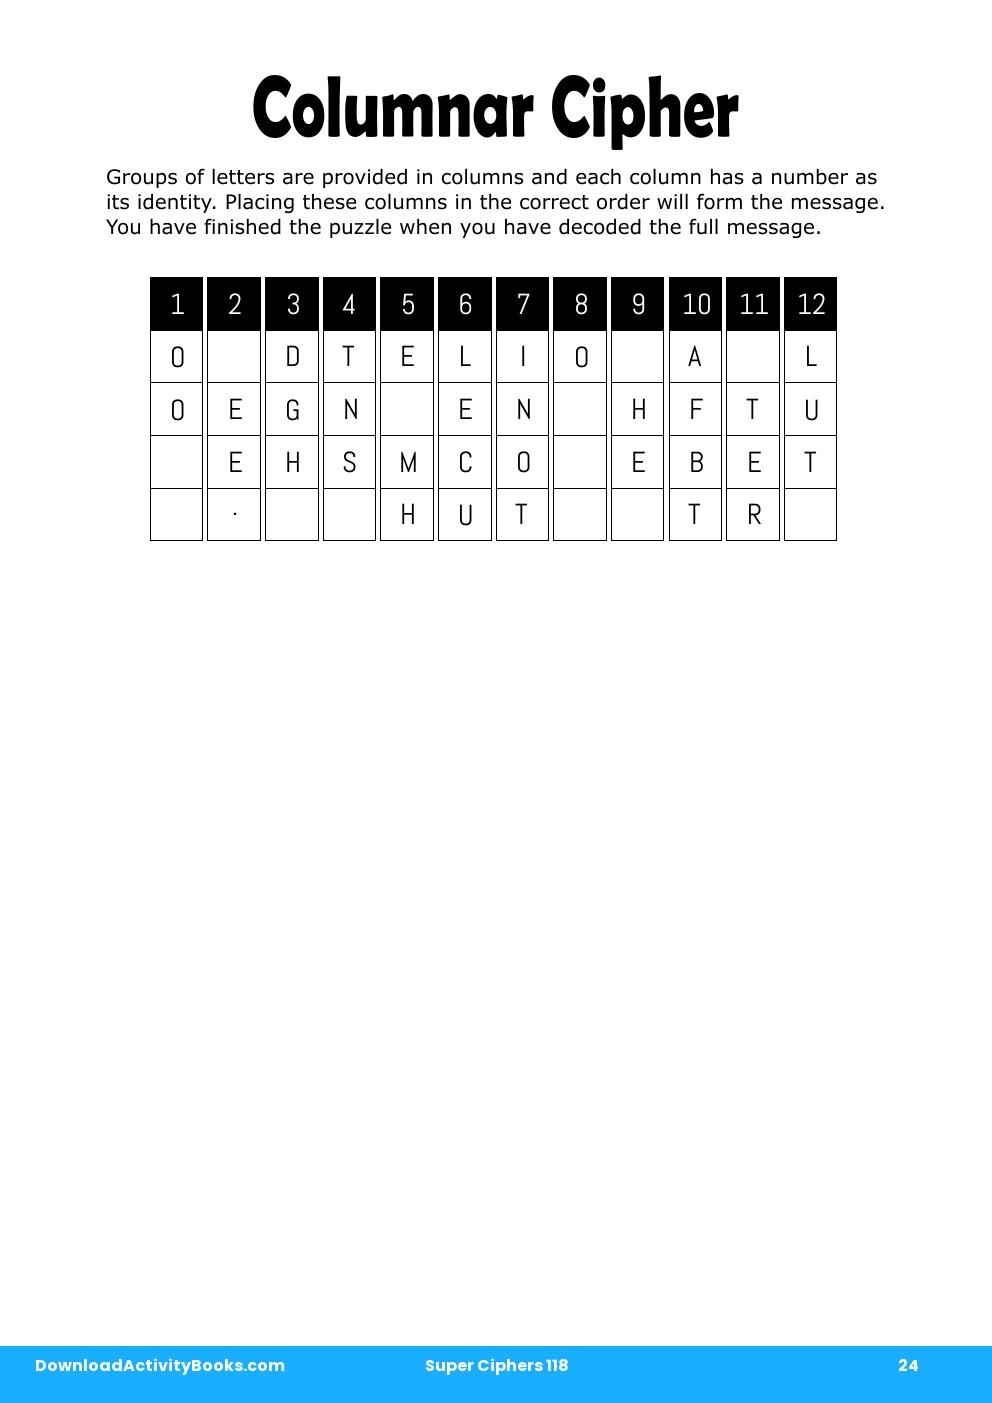 Columnar Cipher in Super Ciphers 118